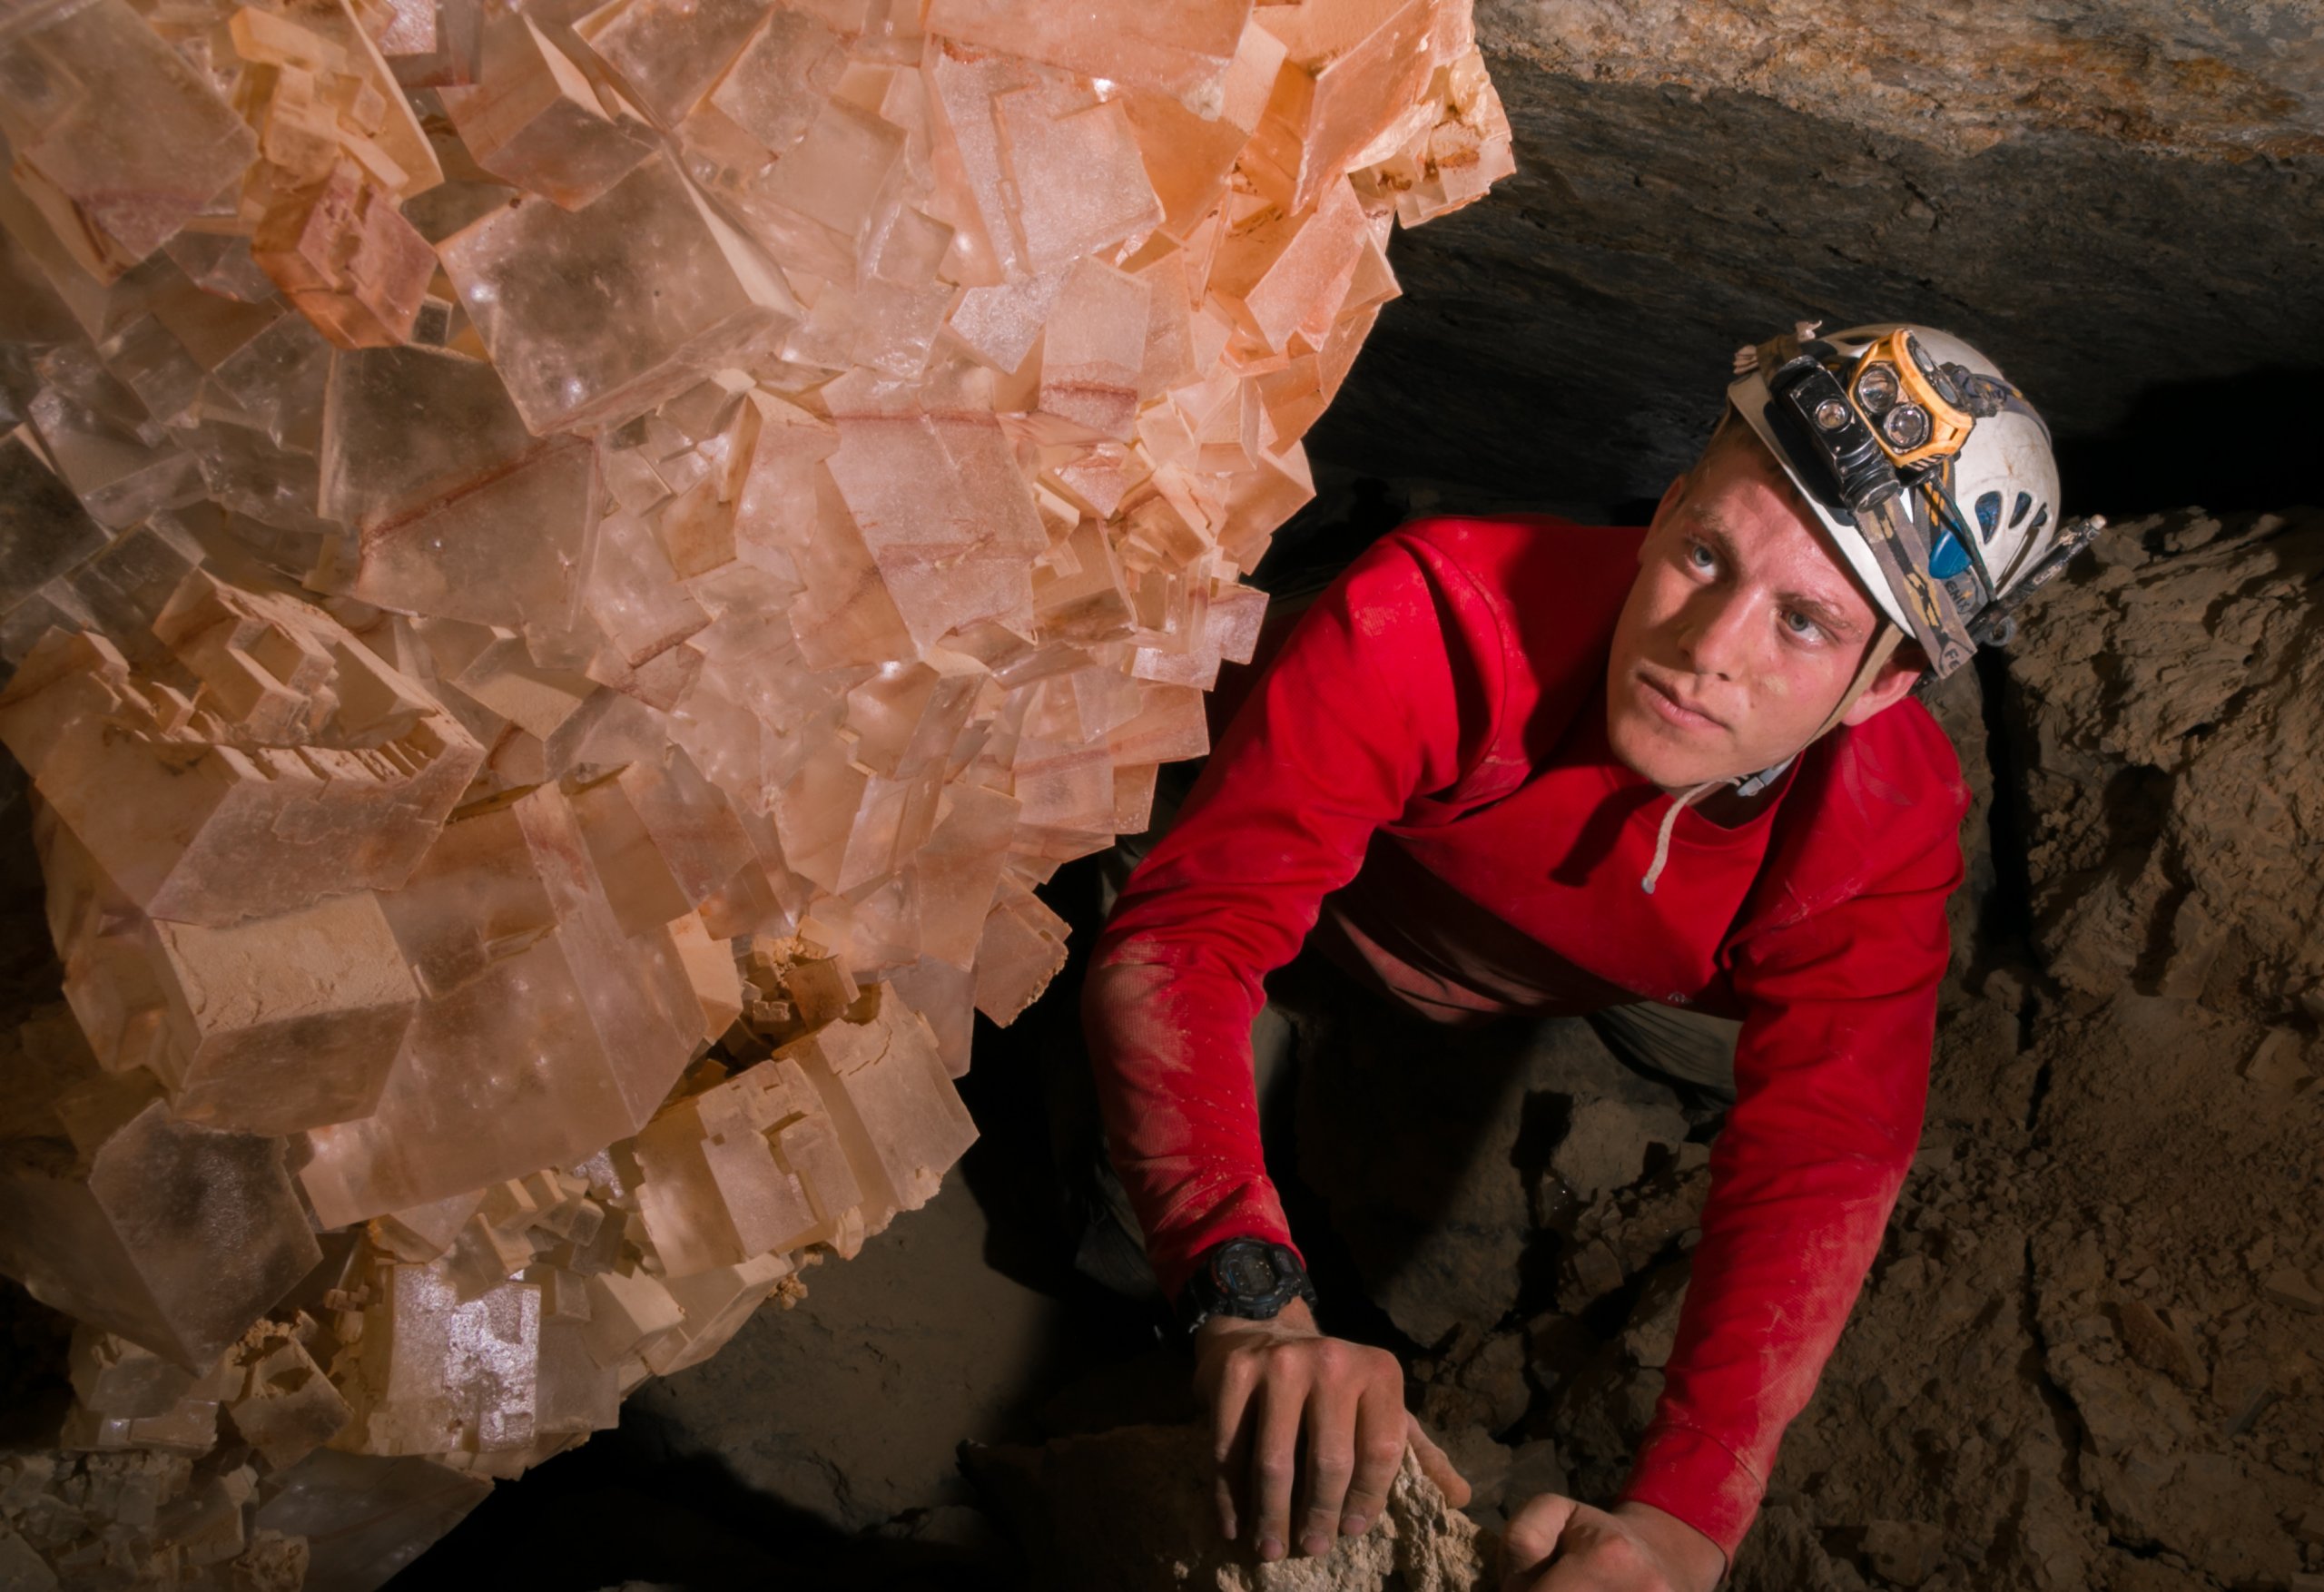 גבישי מלח אדומים הם משקע נדיר ומיוחד במערות המלח של הר סדום. צילום בועז לנגפורד.